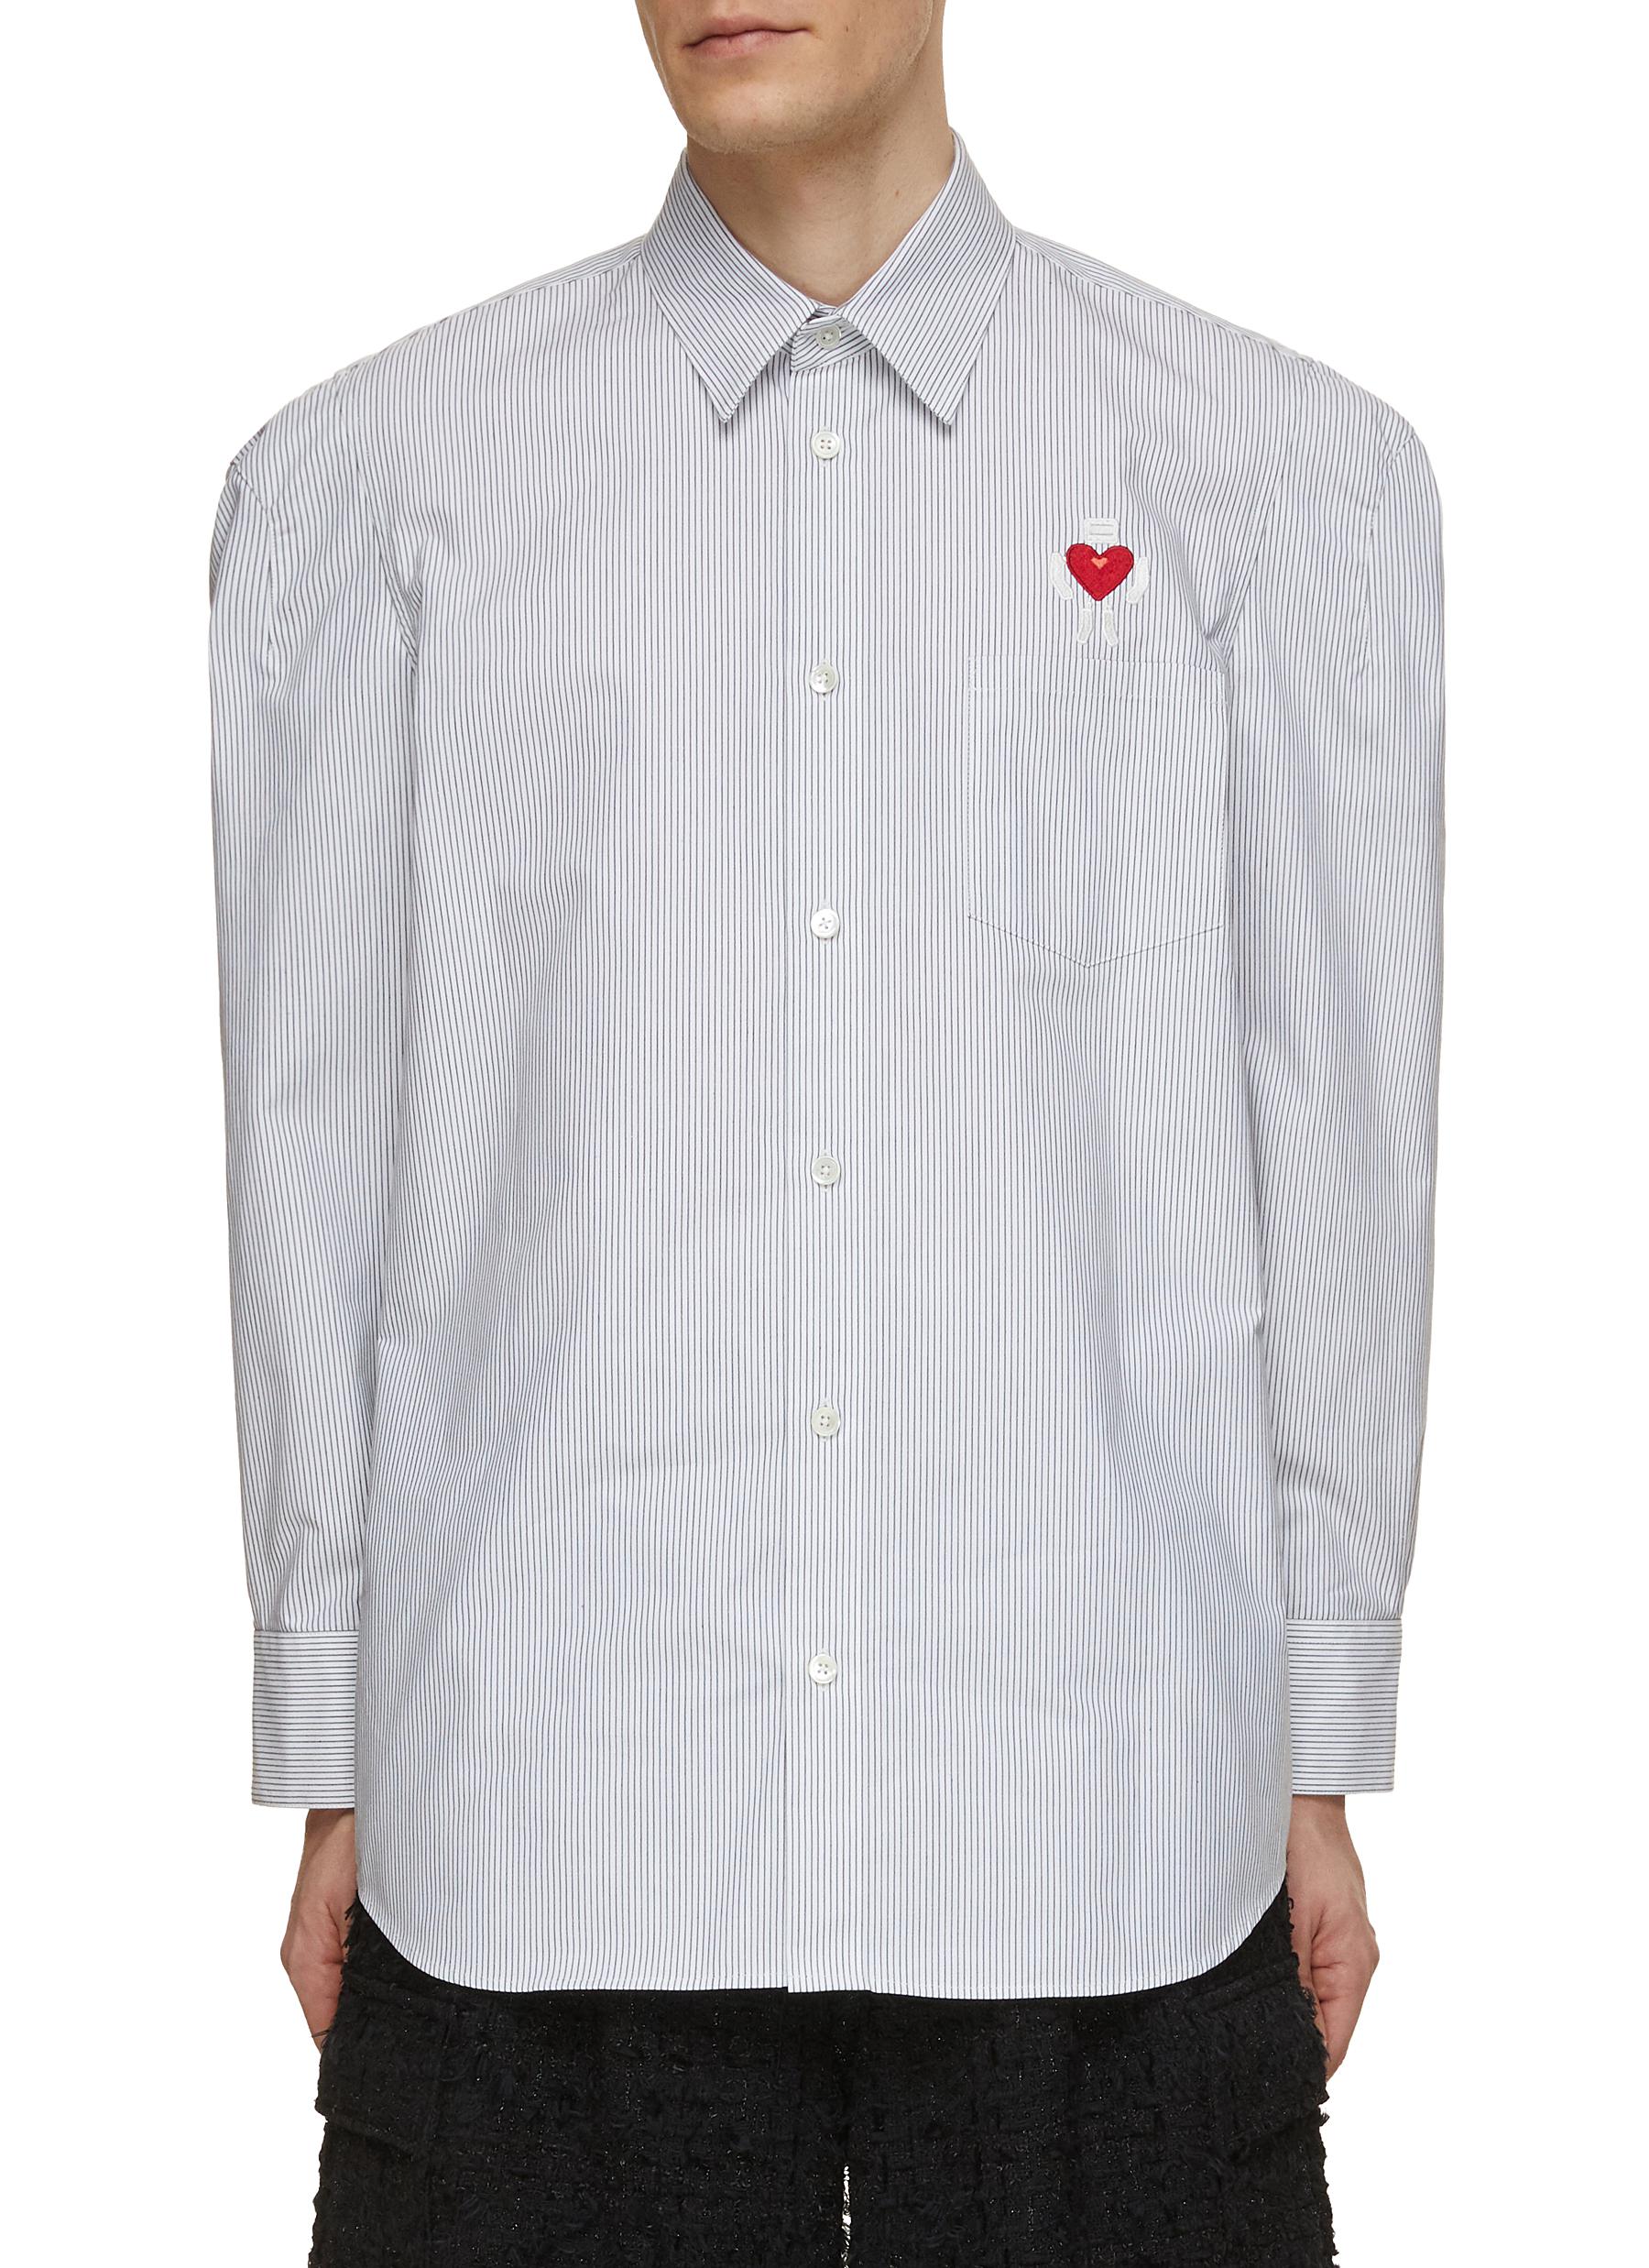 Robot Heart Cotton Shirt